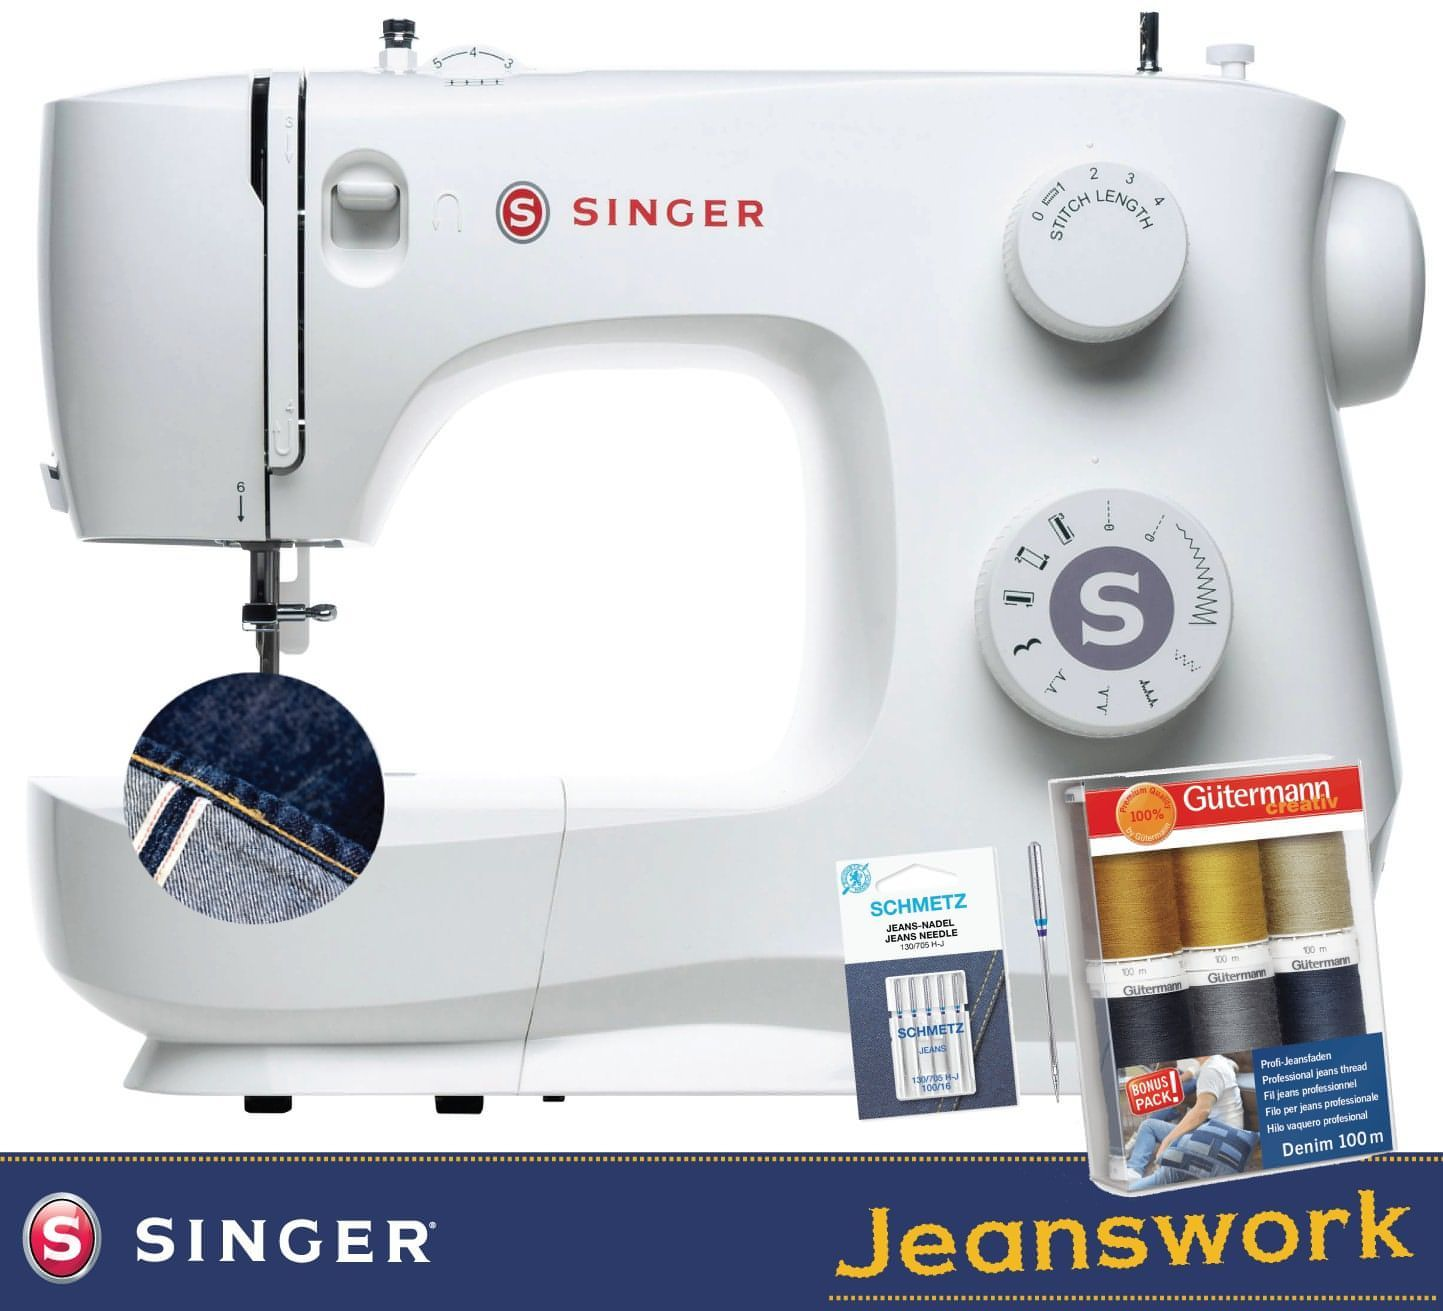 Singer Jeanswork Sewing Machine Bundle